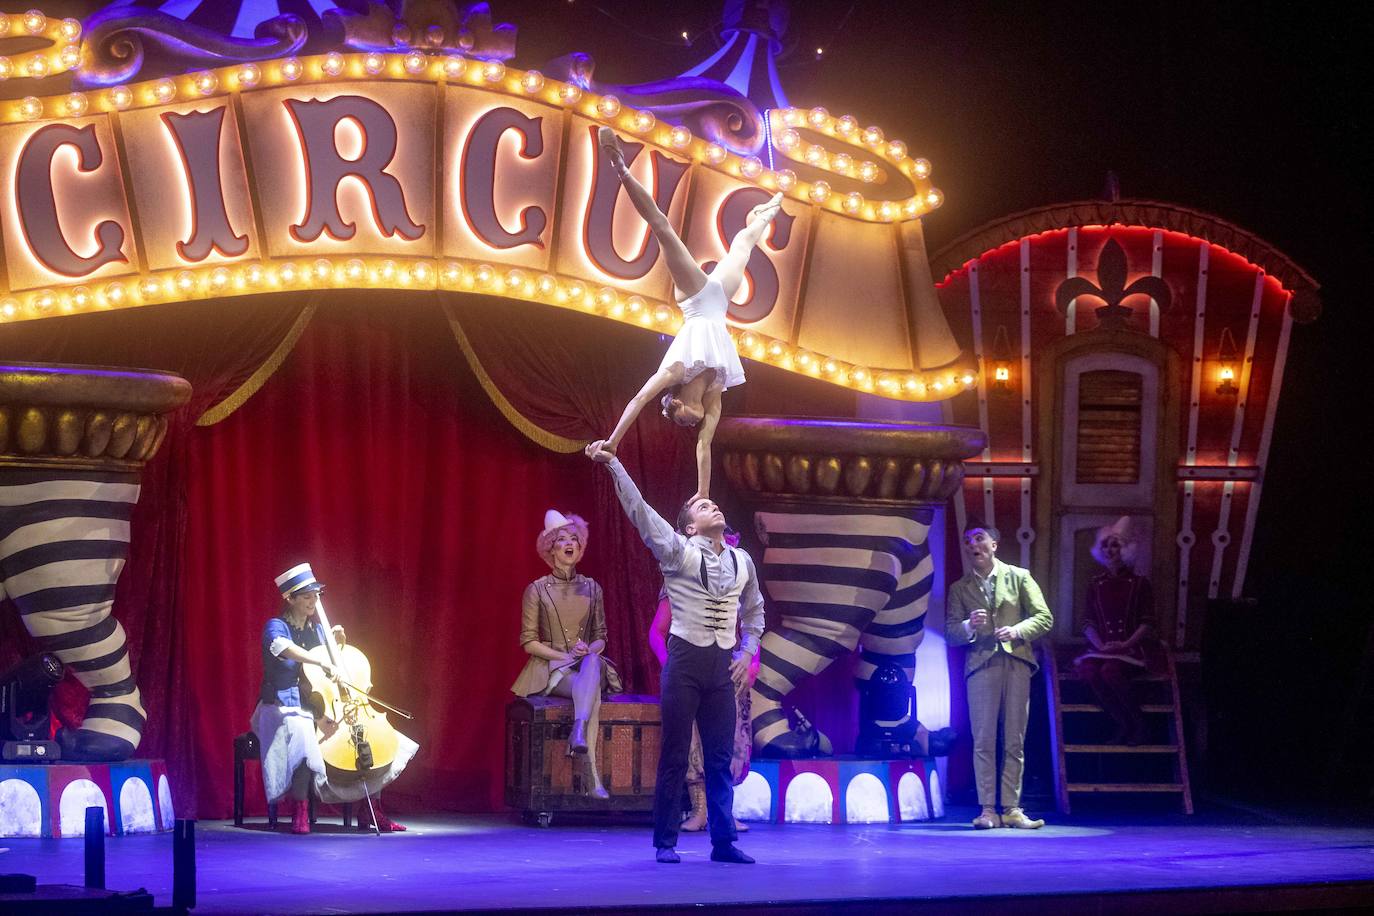 El espectáculo, escrito y dirigido por Emilio Aragón, estará durante tres días en el Nuevo Teatro Circo de Cartagena.